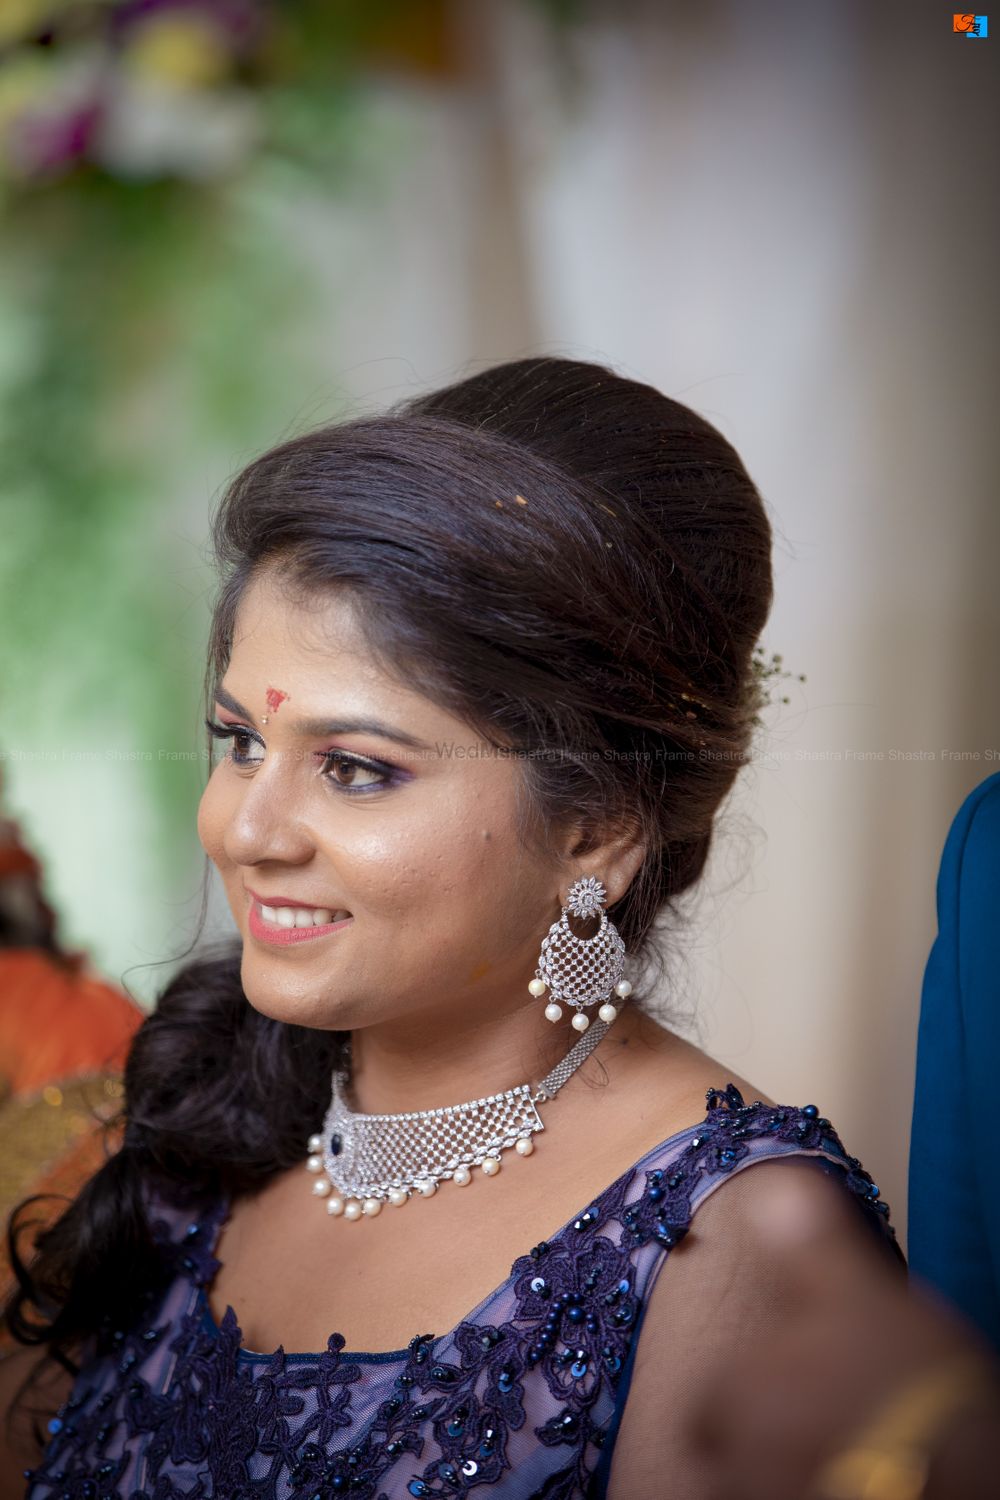 Photo From Ashwini weds Kumar - By Frame Shastra